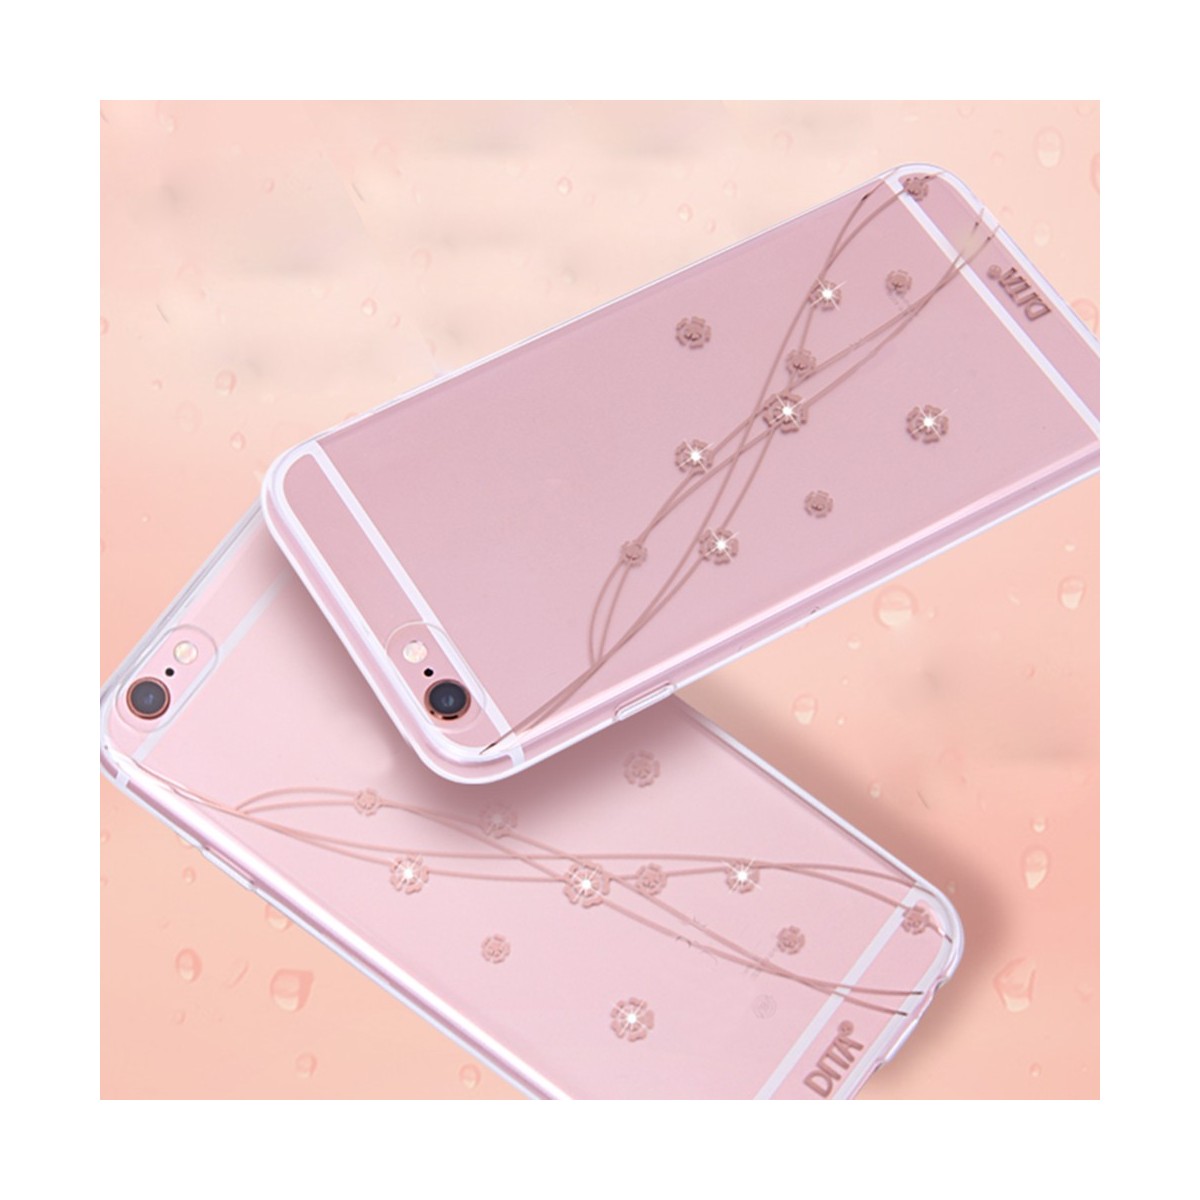 Coque iPhone 6 Plus / 6s Plus Transparente Petites Fleurs et Strass - Dita